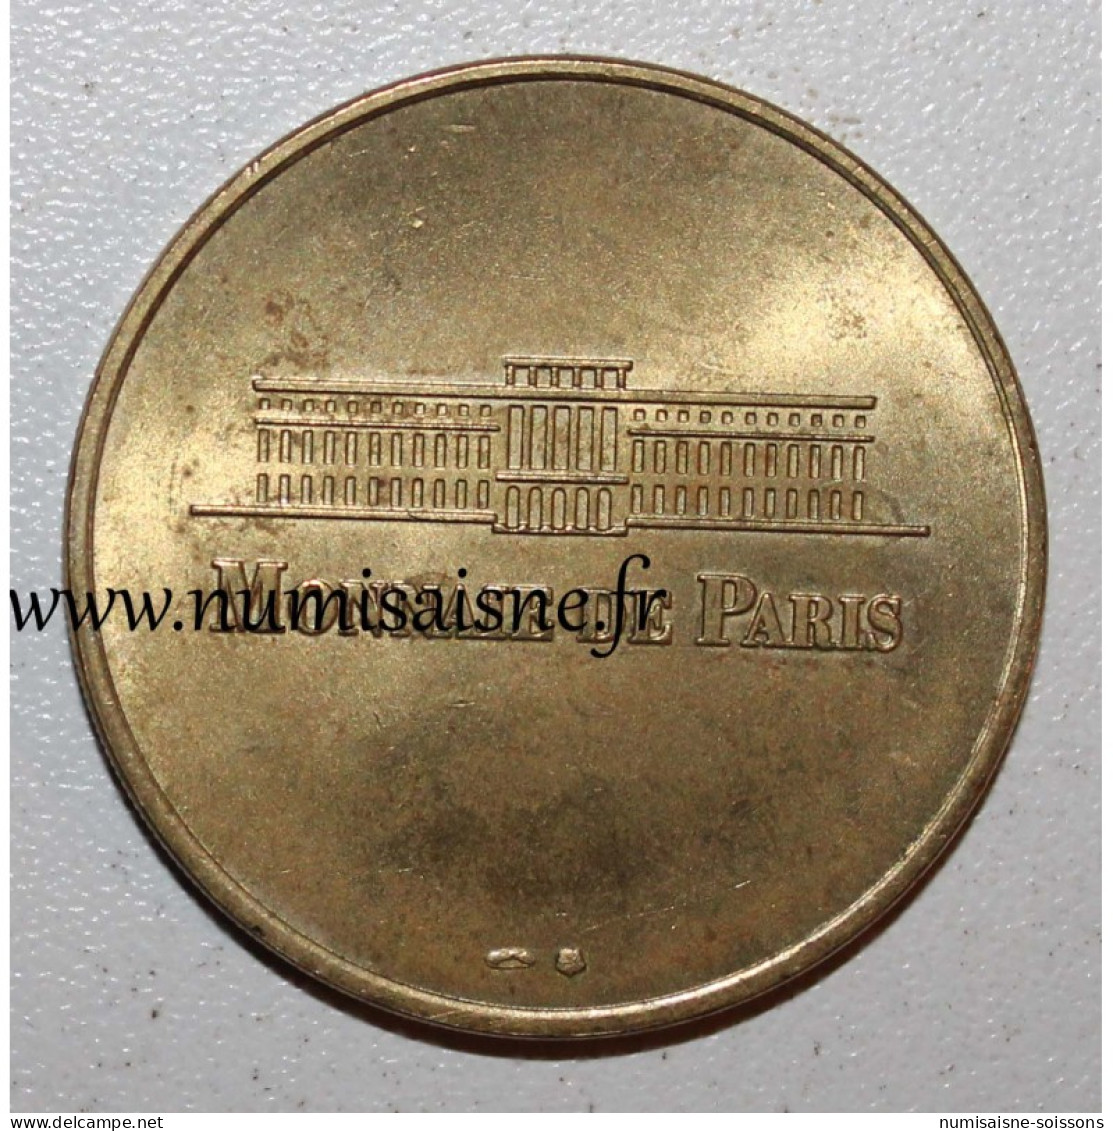 75 - PARIS - PARC ZOOLOGIQUE - Monnaie De Paris - 1998 - TTB/SUP - Zonder Datum